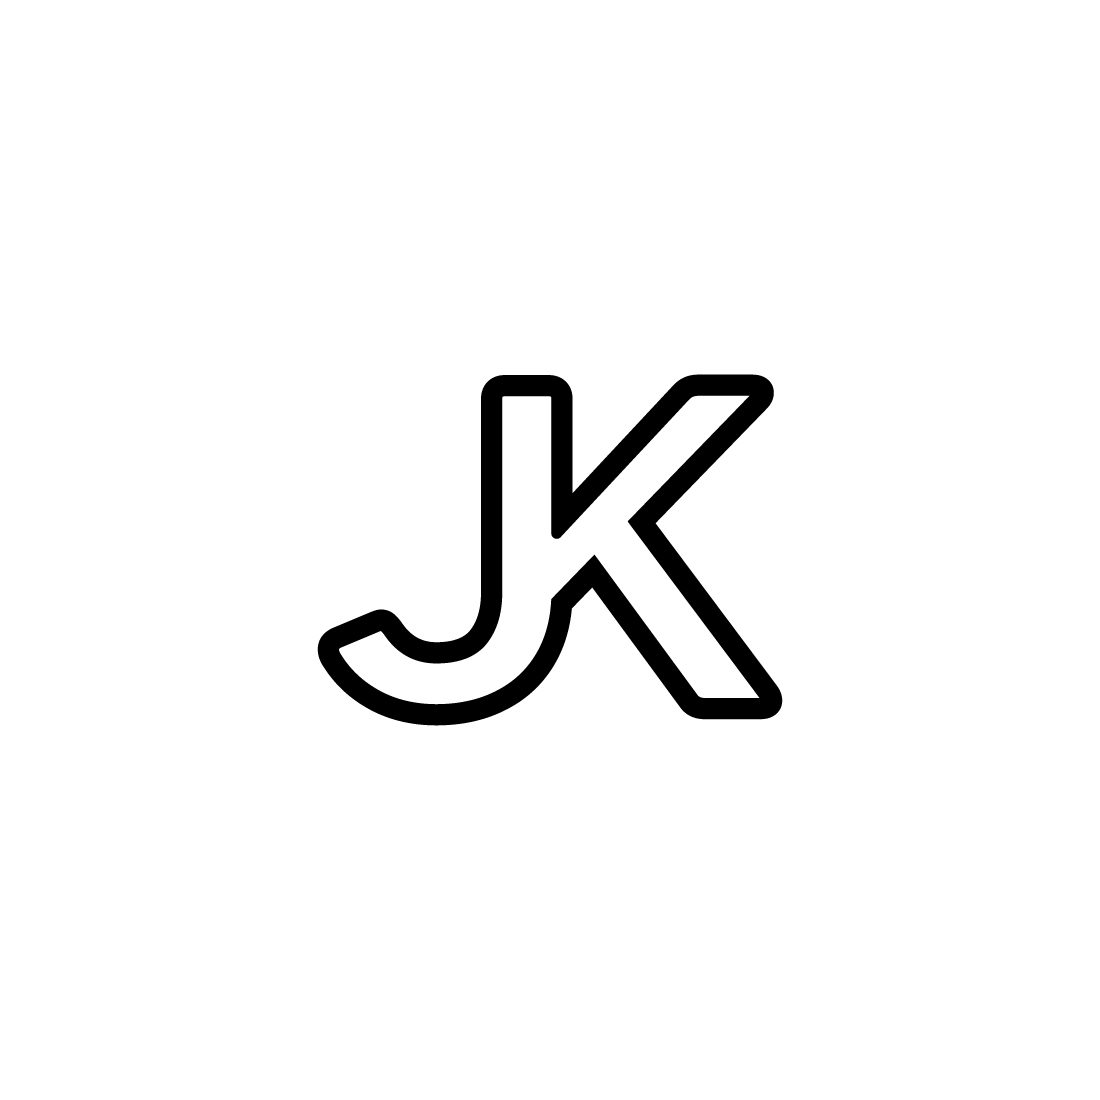 JK logo design preview image.